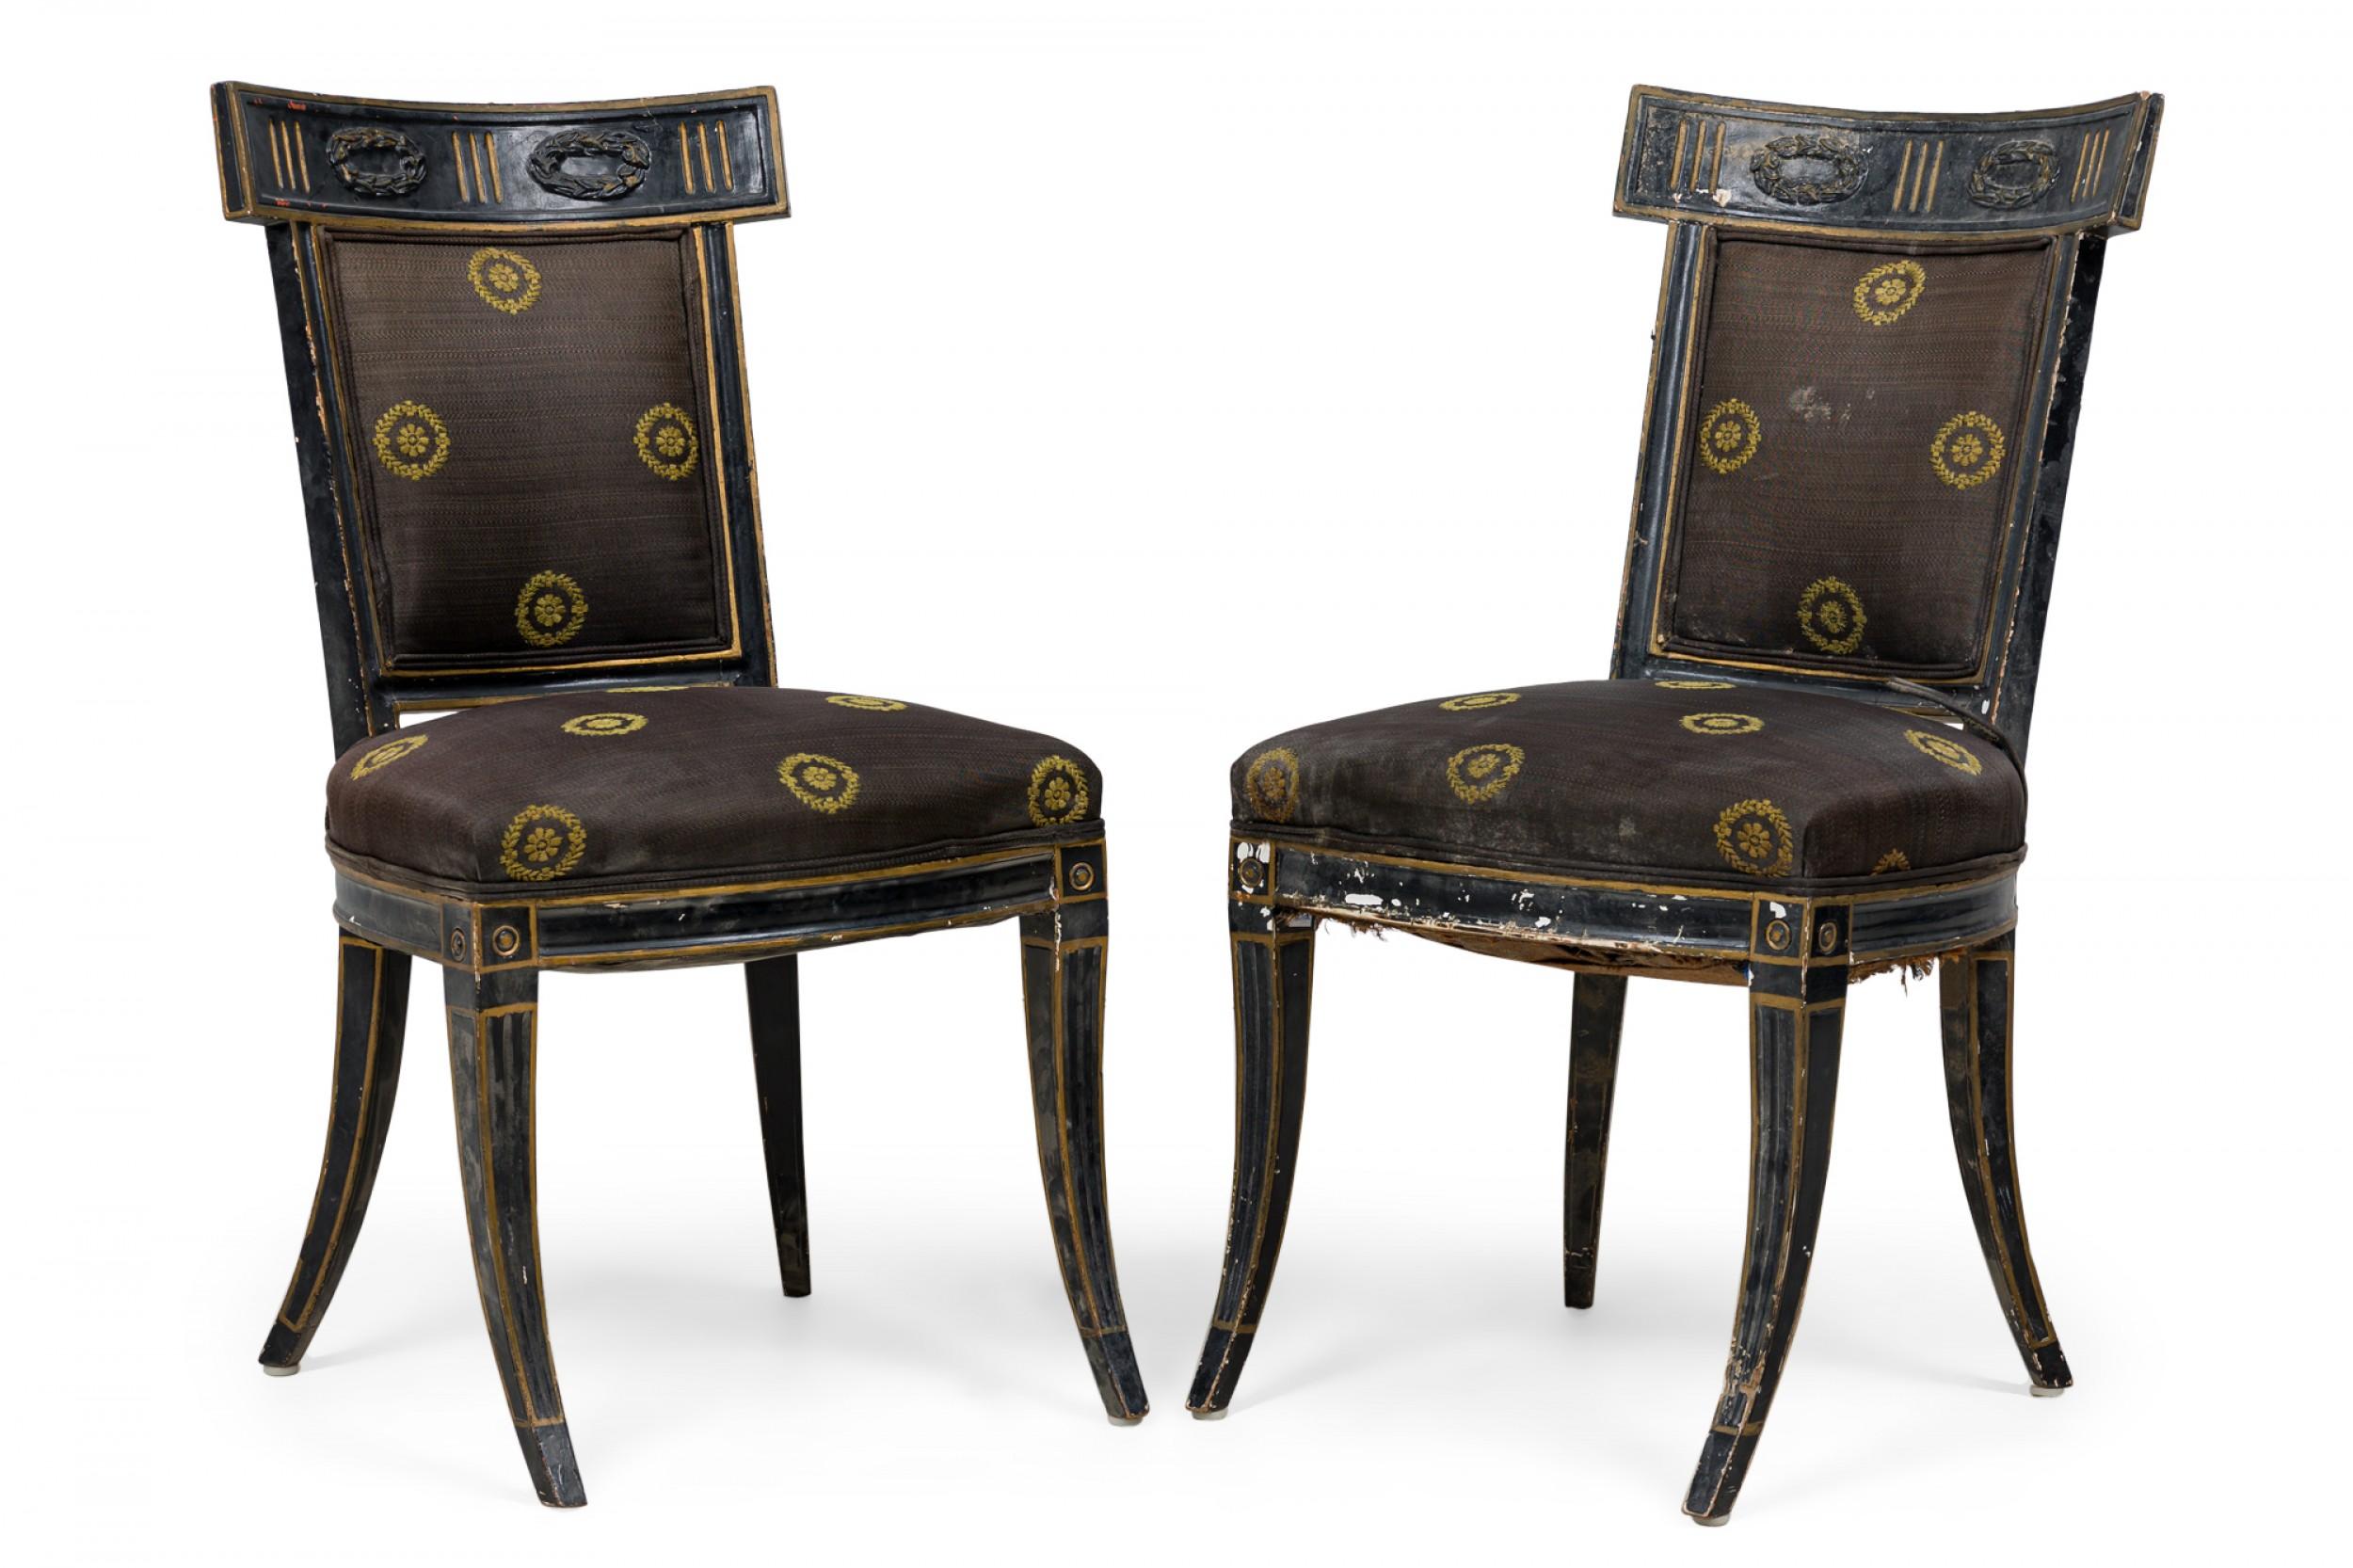 Pärchen italienischer neoklassischer (18. Jahrhundert) schwarz bemalter Beistellstühle mit geschwungenen Rückenlehnen und rechteckigen Tischplatten, die in einer zweikronigen, mit Gold verzierten und hervorgehobenen Reserve geschnitzt sind, 